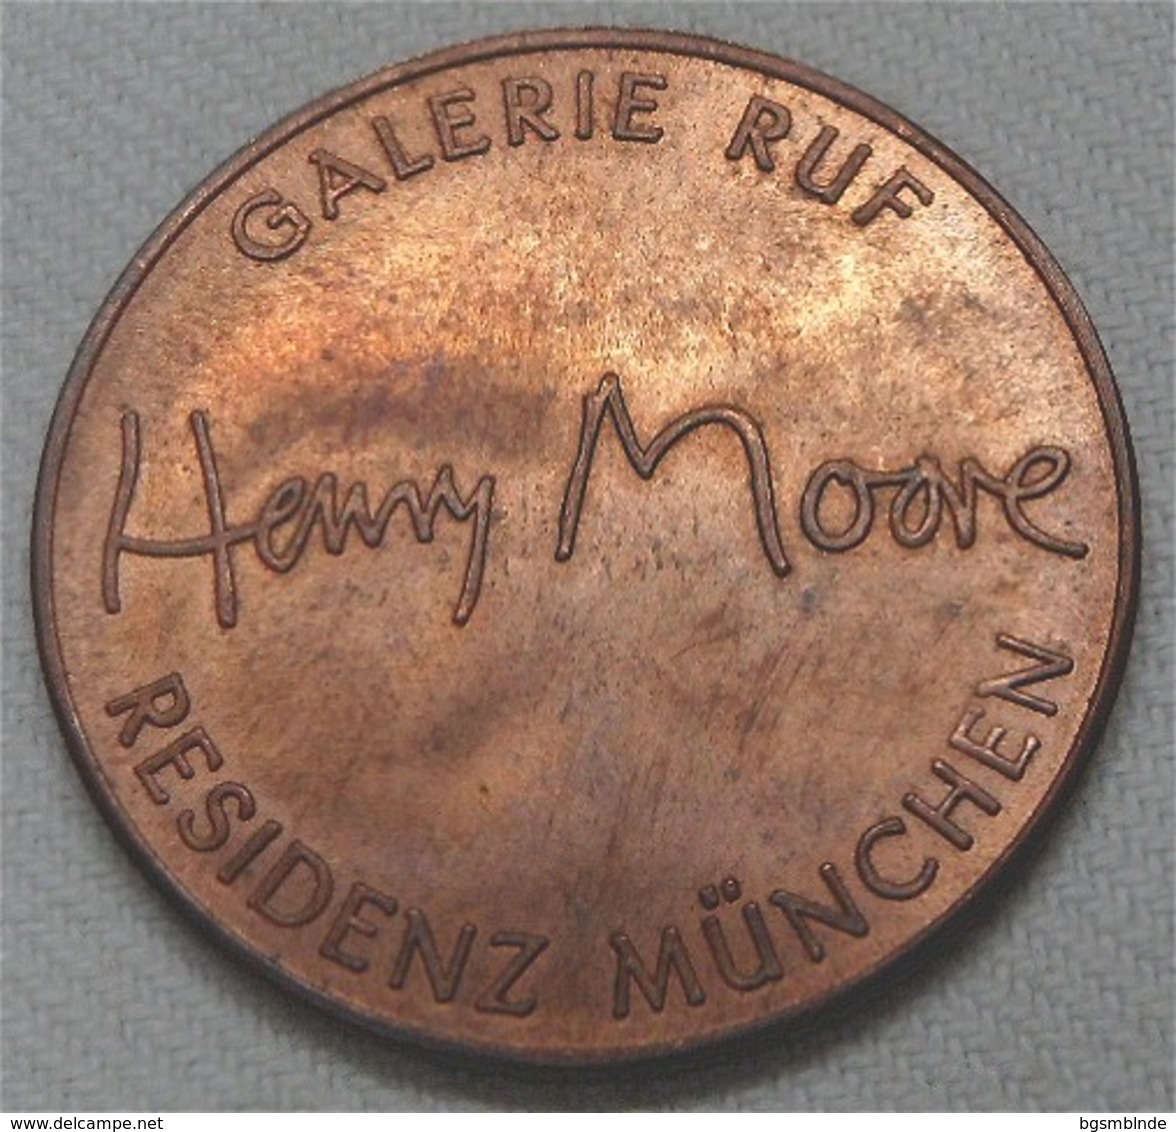 Medaille "Henry Moore" Galerie Ruf München - Pièces écrasées (Elongated Coins)